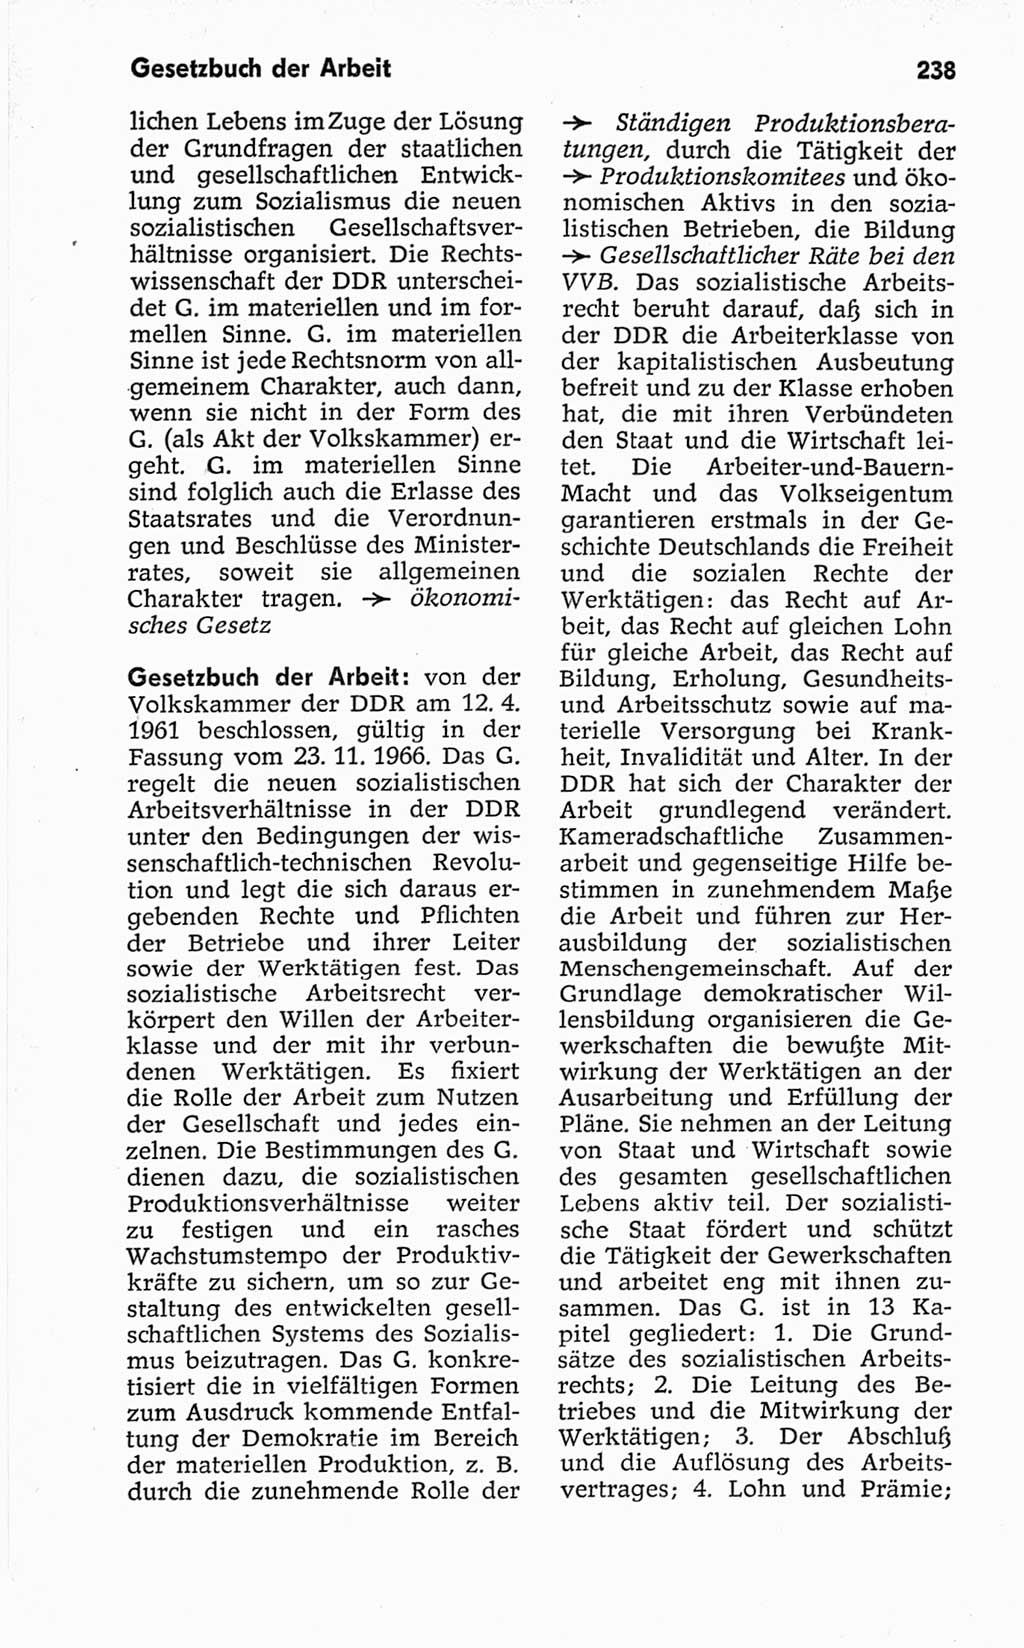 Kleines politisches Wörterbuch [Deutsche Demokratische Republik (DDR)] 1967, Seite 238 (Kl. pol. Wb. DDR 1967, S. 238)